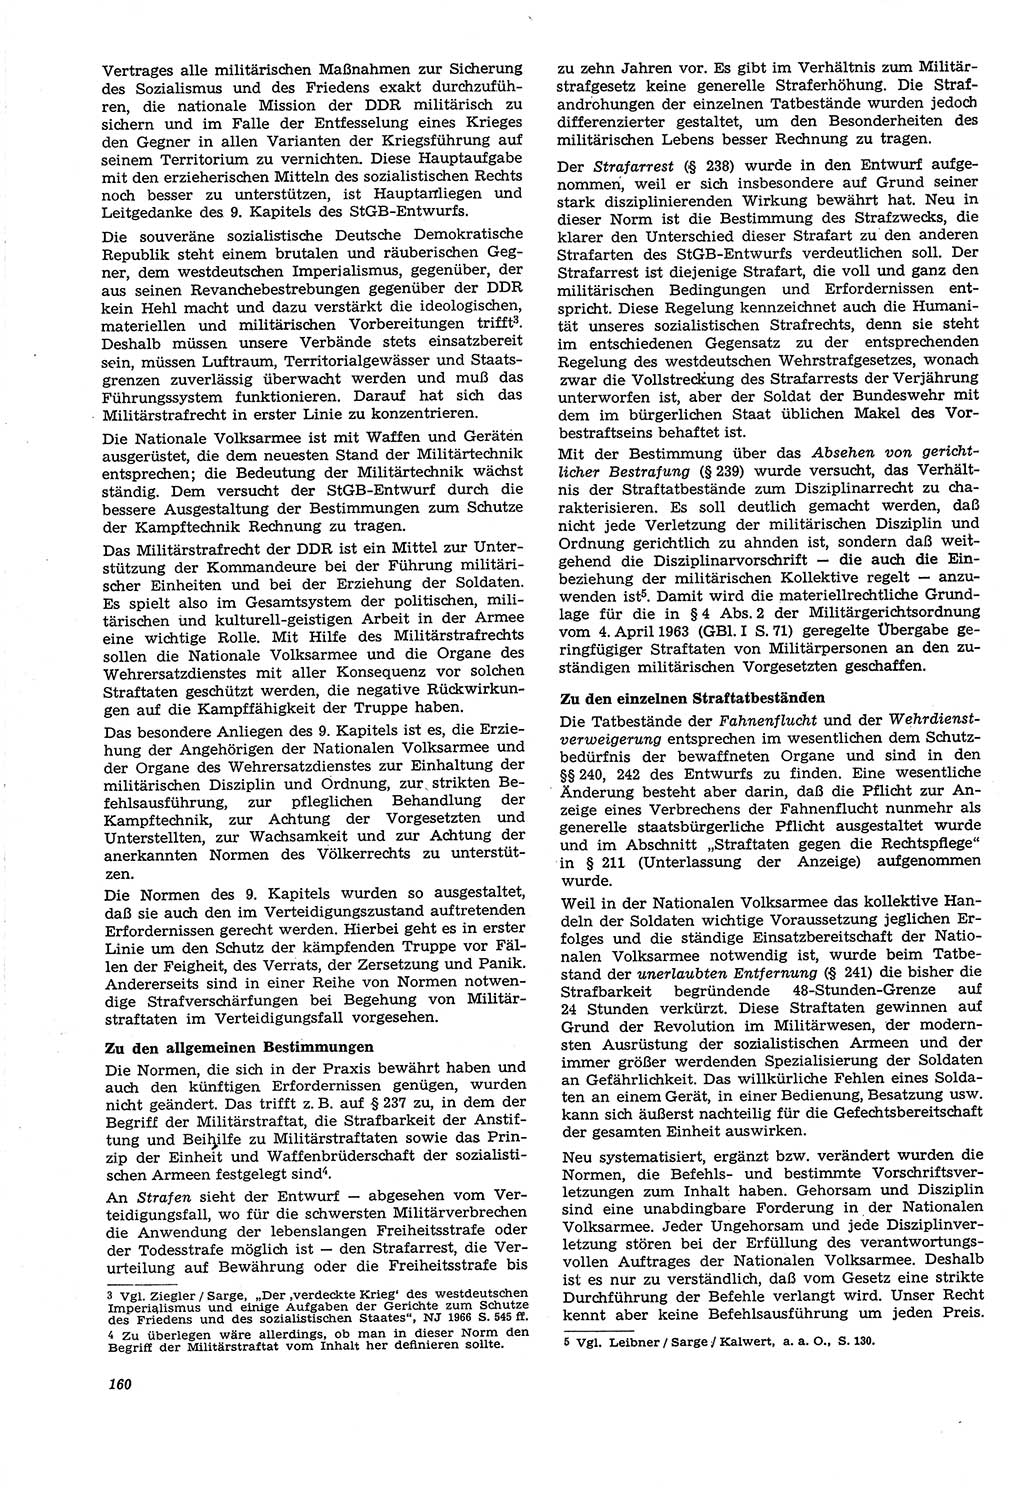 Neue Justiz (NJ), Zeitschrift für Recht und Rechtswissenschaft [Deutsche Demokratische Republik (DDR)], 21. Jahrgang 1967, Seite 160 (NJ DDR 1967, S. 160)